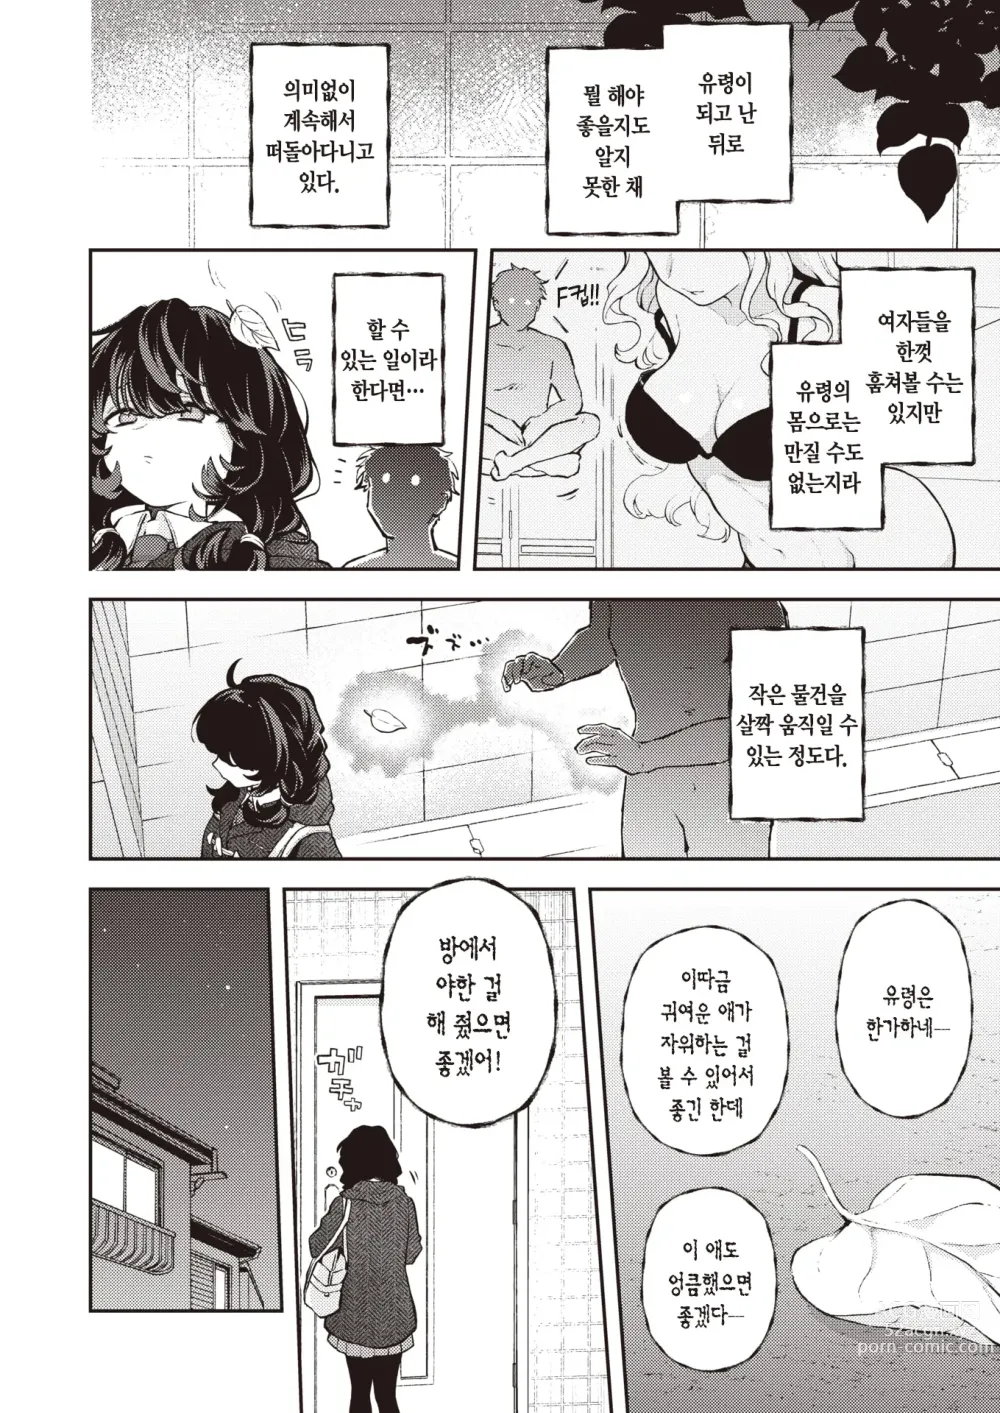 Page 3 of manga 혼자서 하지 마